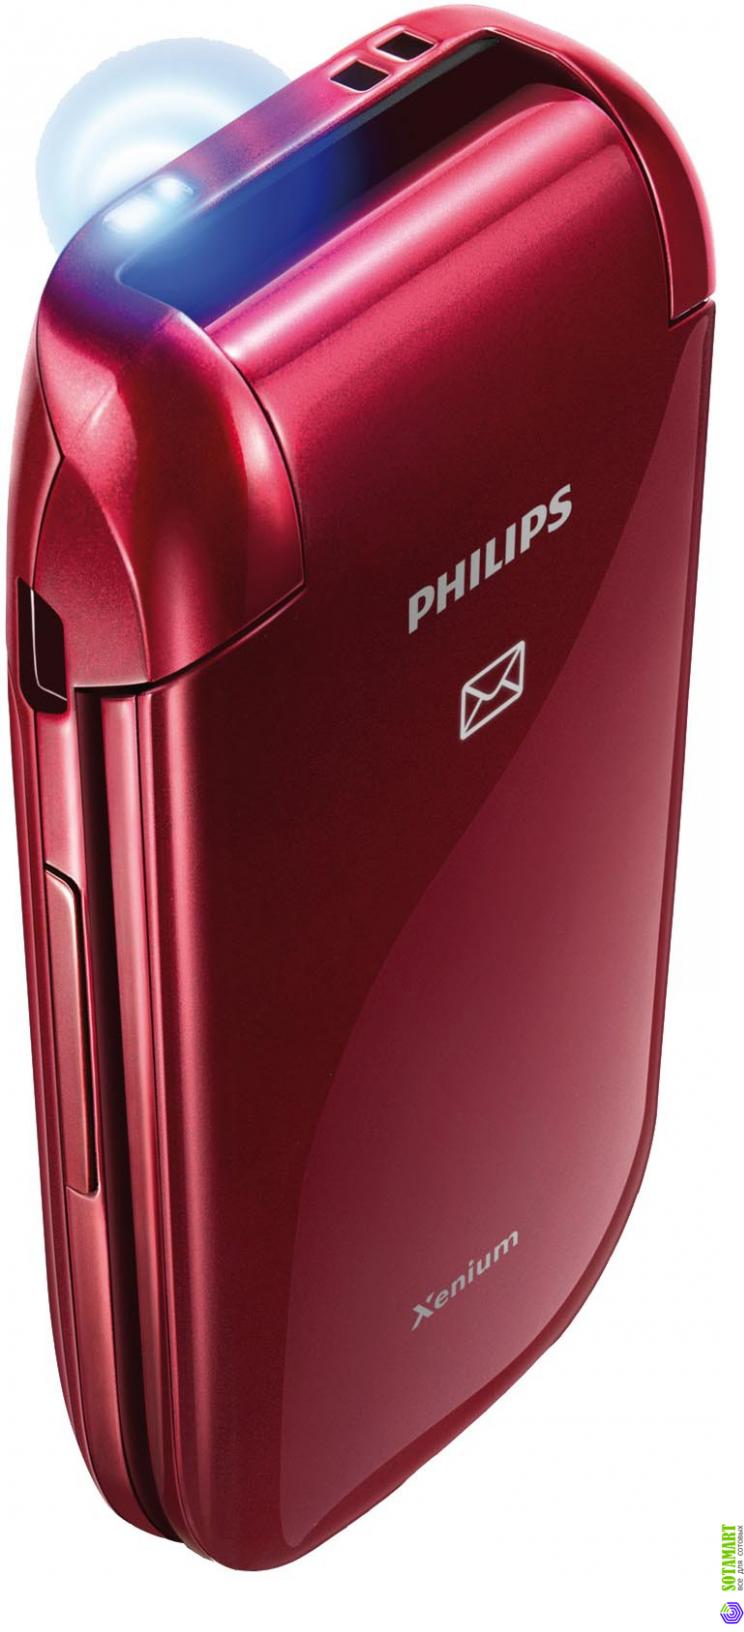 Филипс 2 сим. Philips x216. Xenium x216. Philips Xenium 216. Филипс ксениум x216.